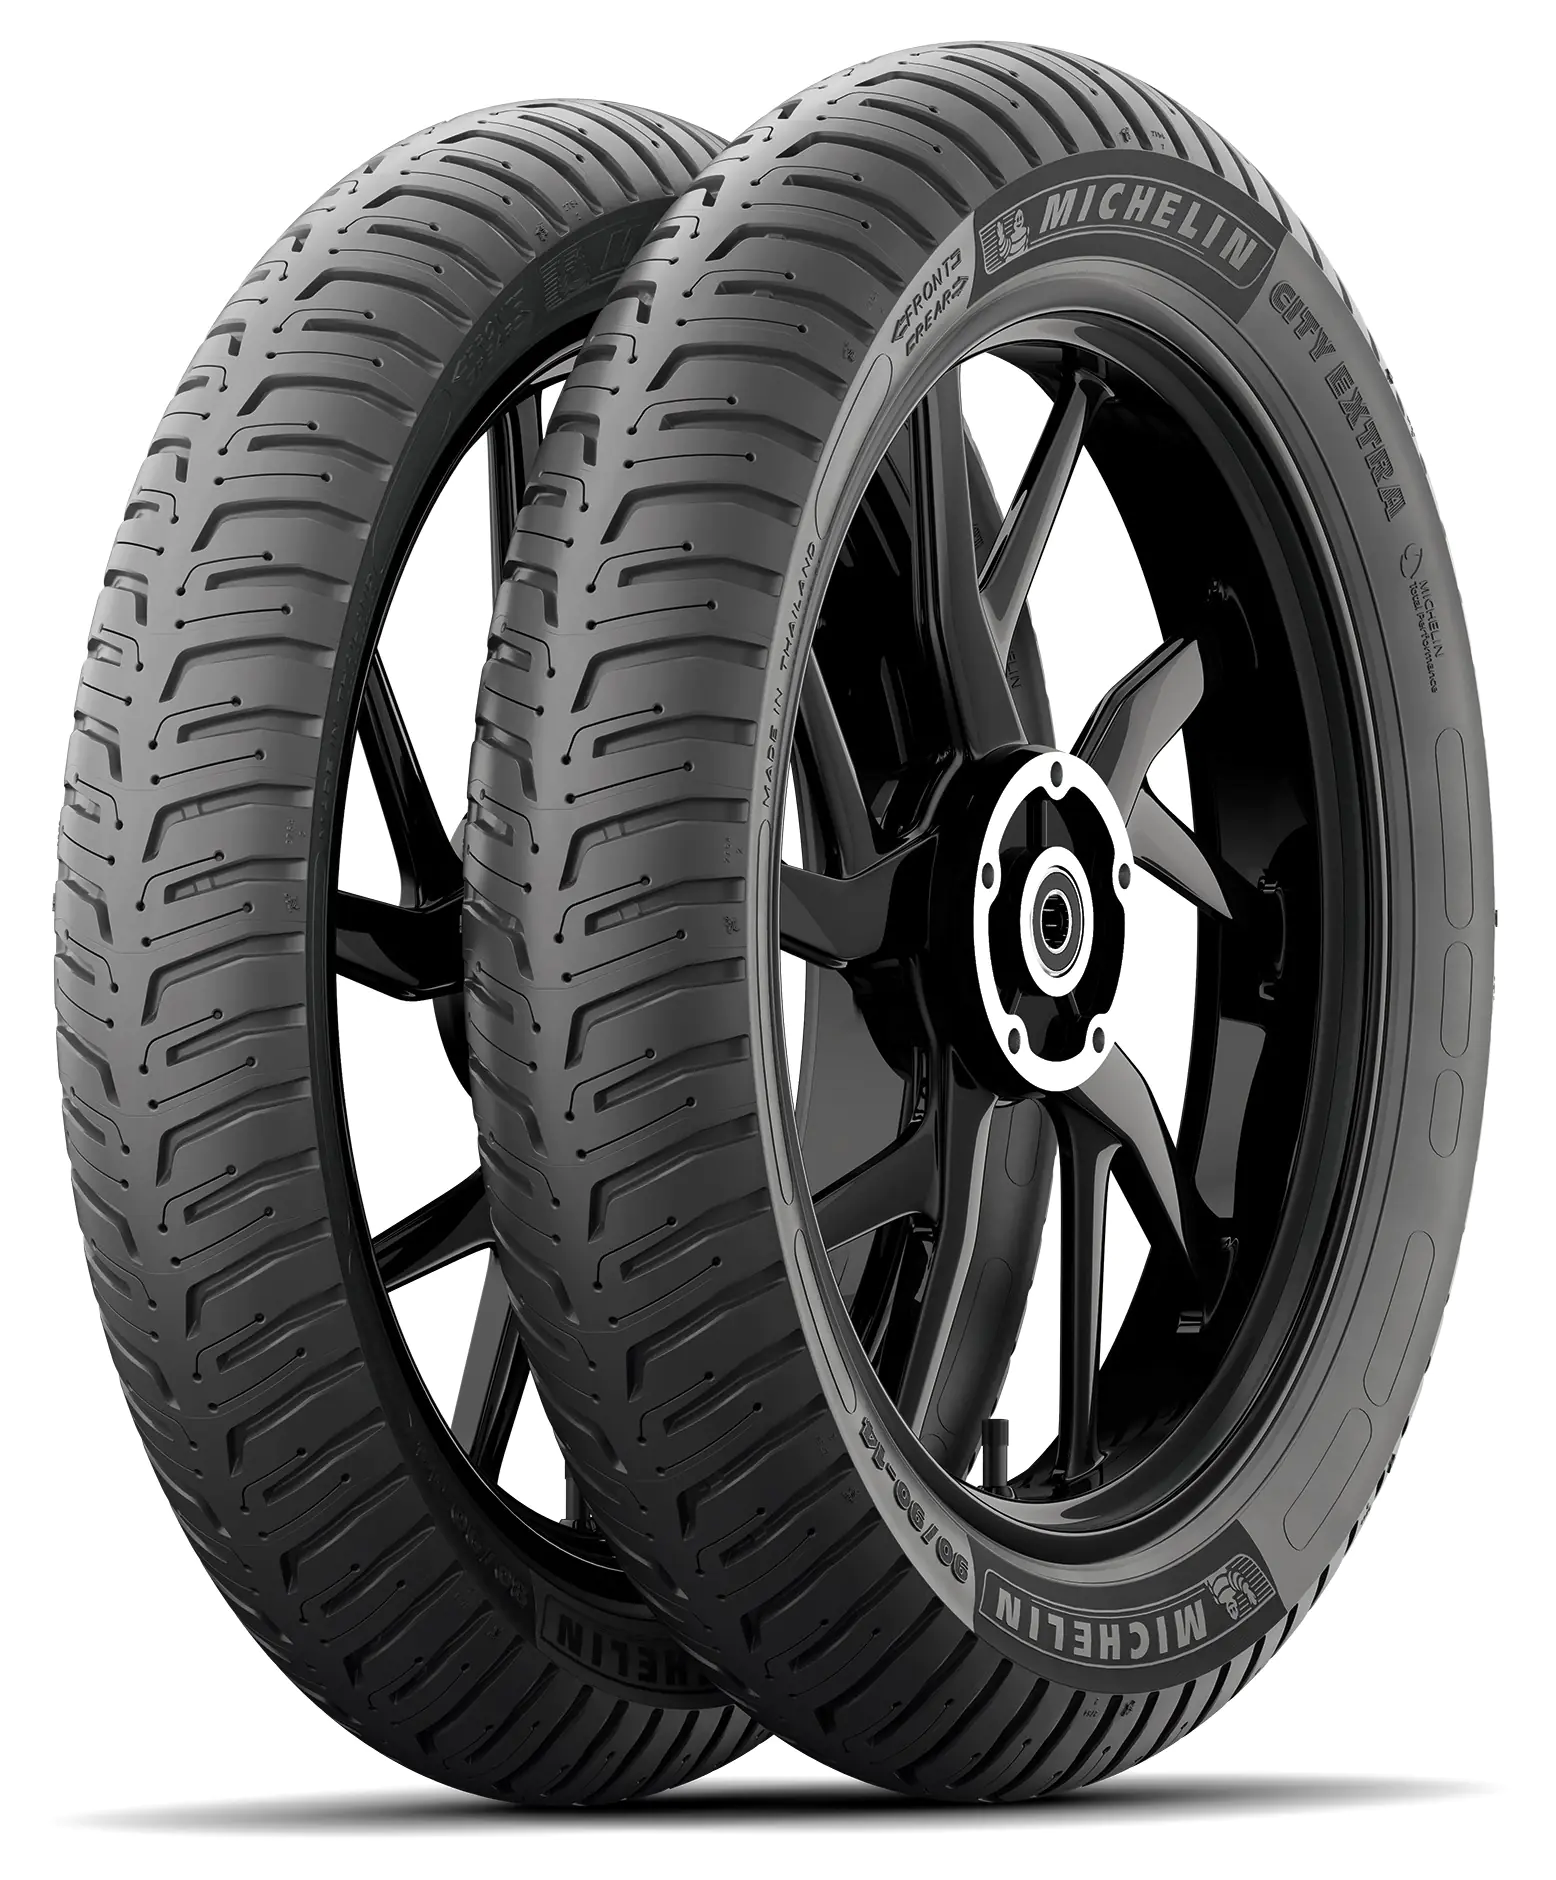 Michelin Michelin 3.50-10 59J CITY EXTRA pneumatici nuovi Estivo 